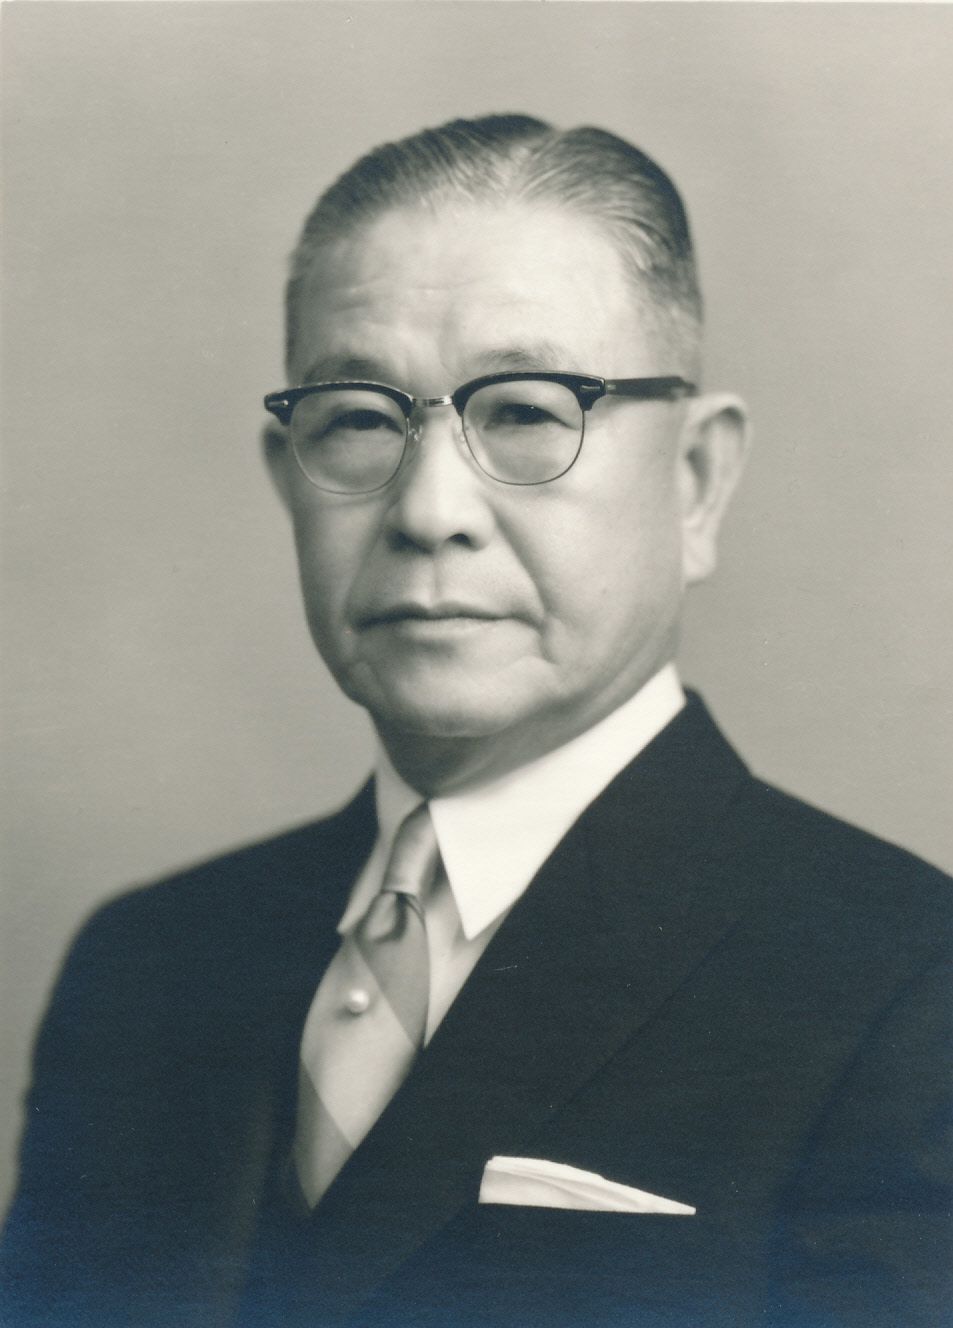 長崎県長崎市の洋品店に生まれた野田岩次郎。ホテルオークラ東京開業当時の社長を務めた。